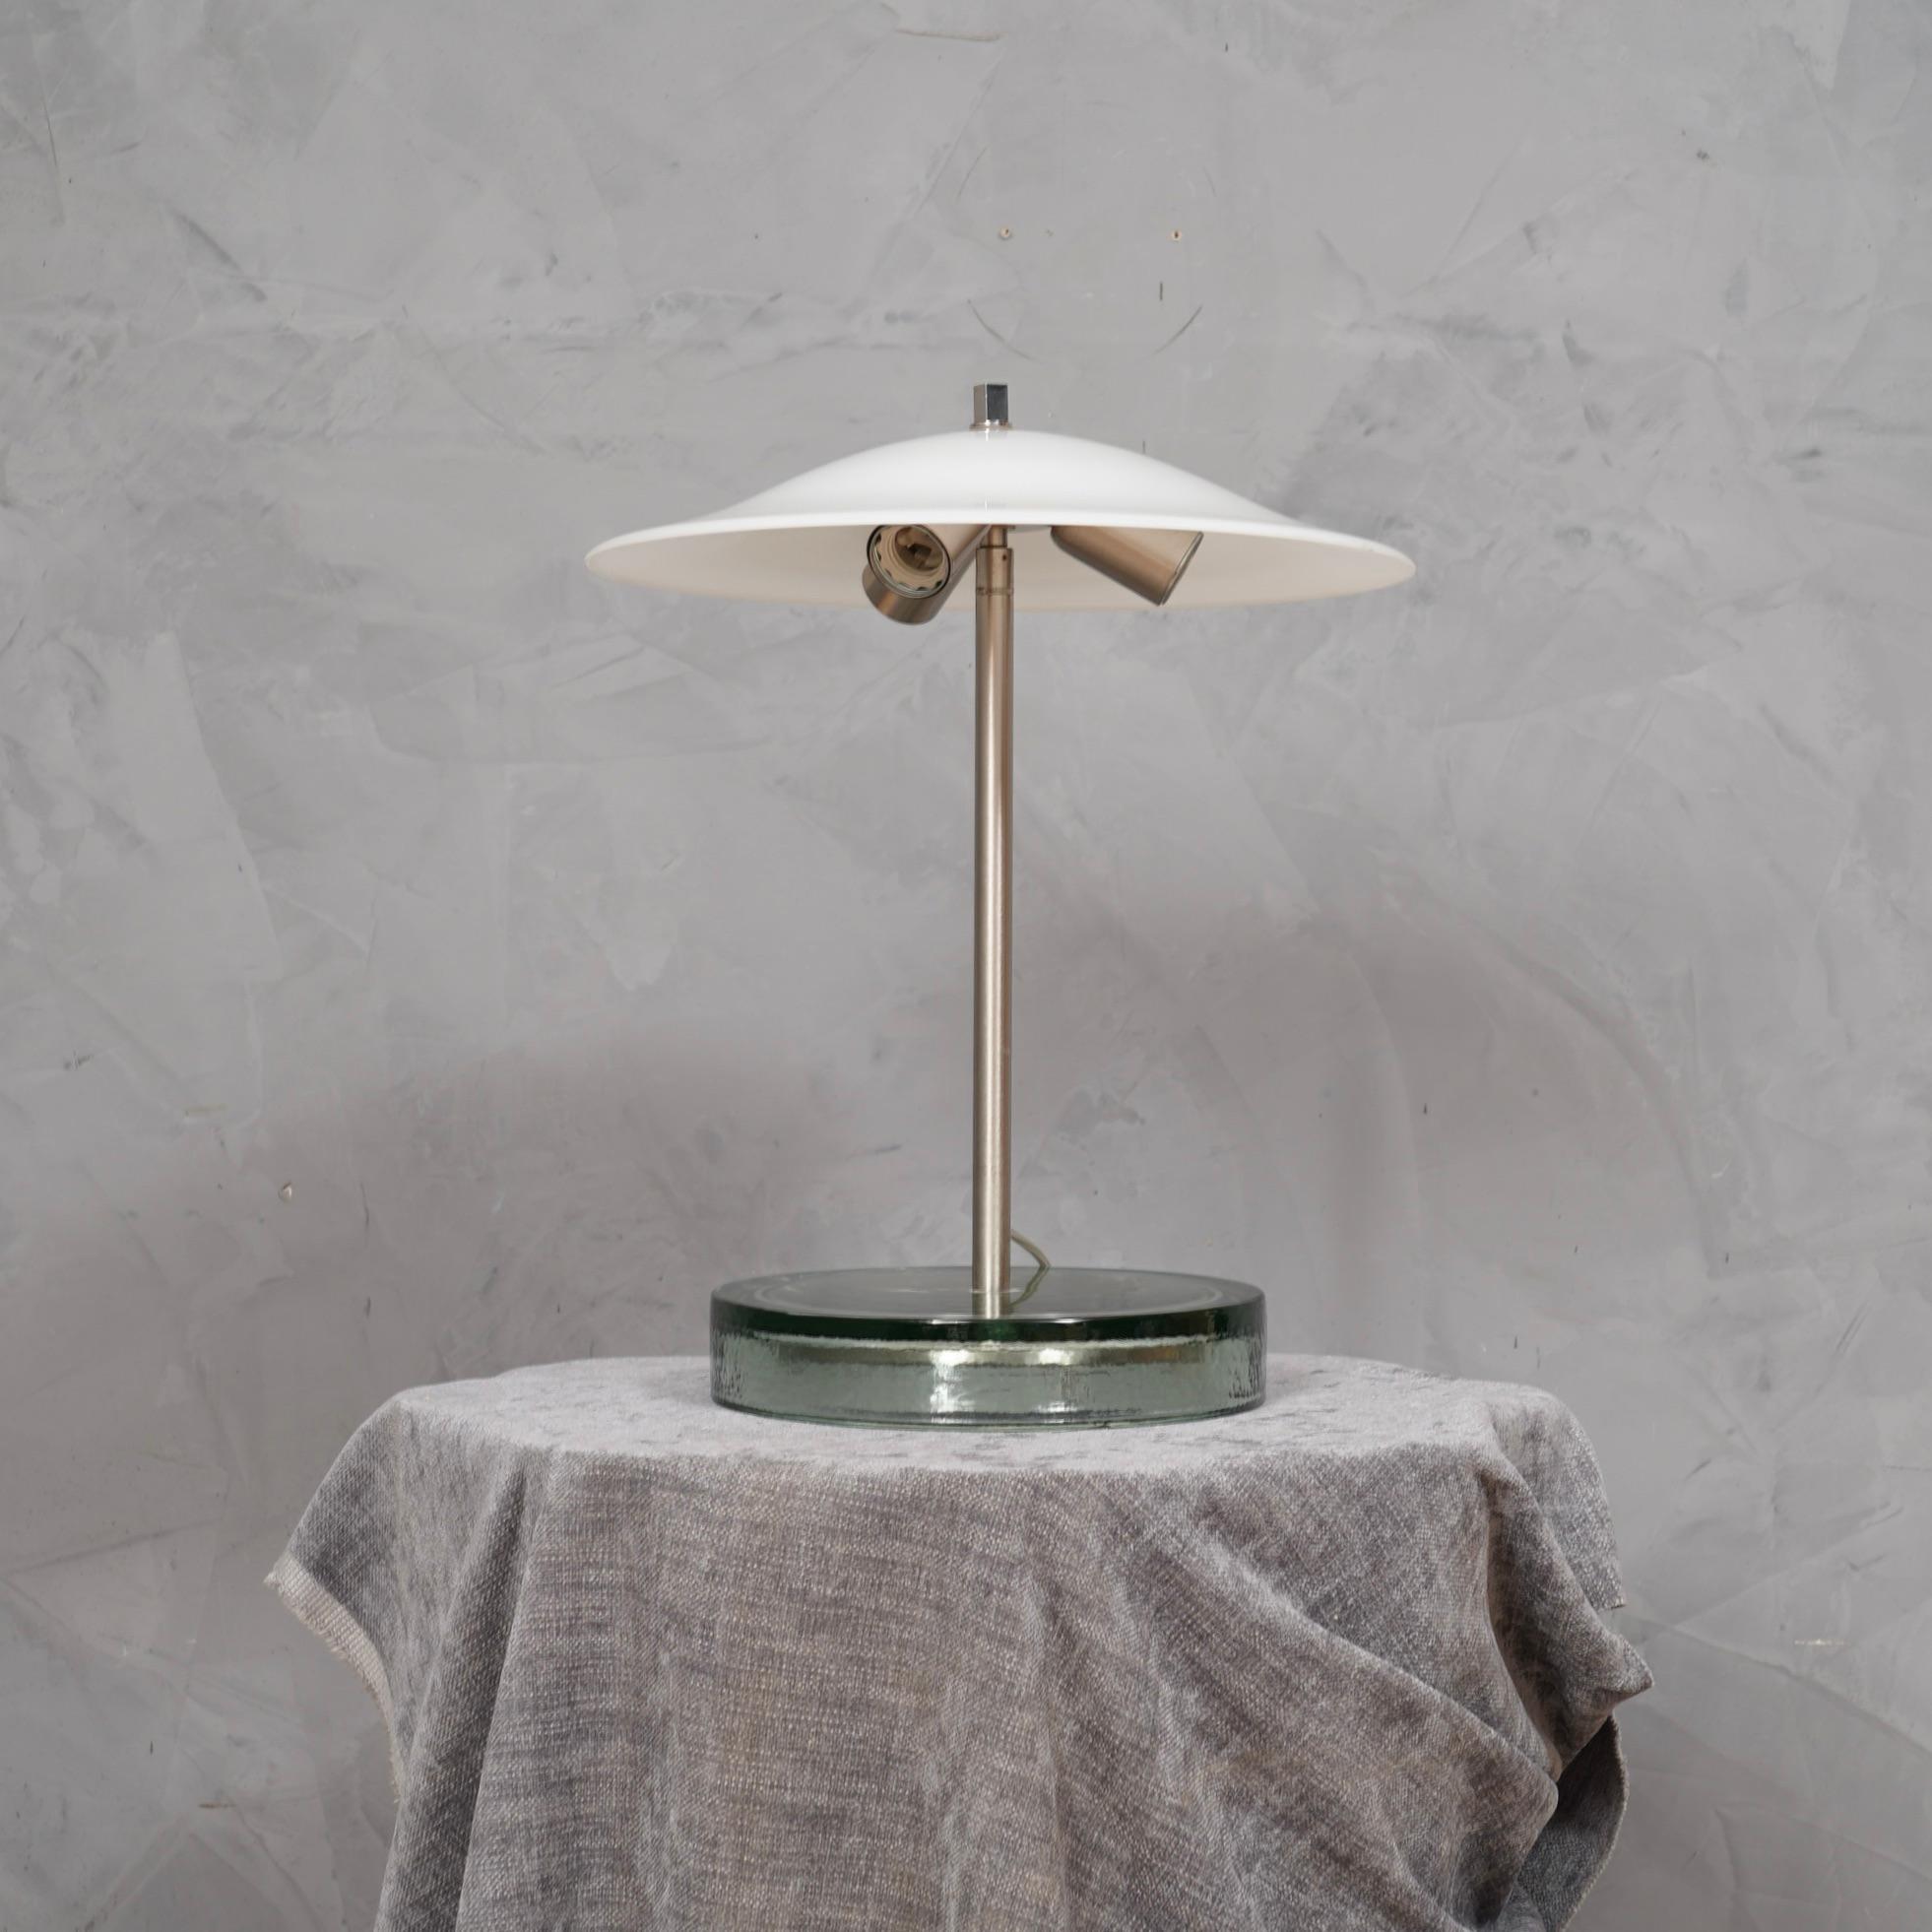 Un design incomparable pour ces lampes de table de Vistosi, certainement très élégant sur un beau bureau.

La lampe est composée d'une grande base en verre transparent à partir de laquelle est sortie une tige en acier satiné au centre sur laquelle